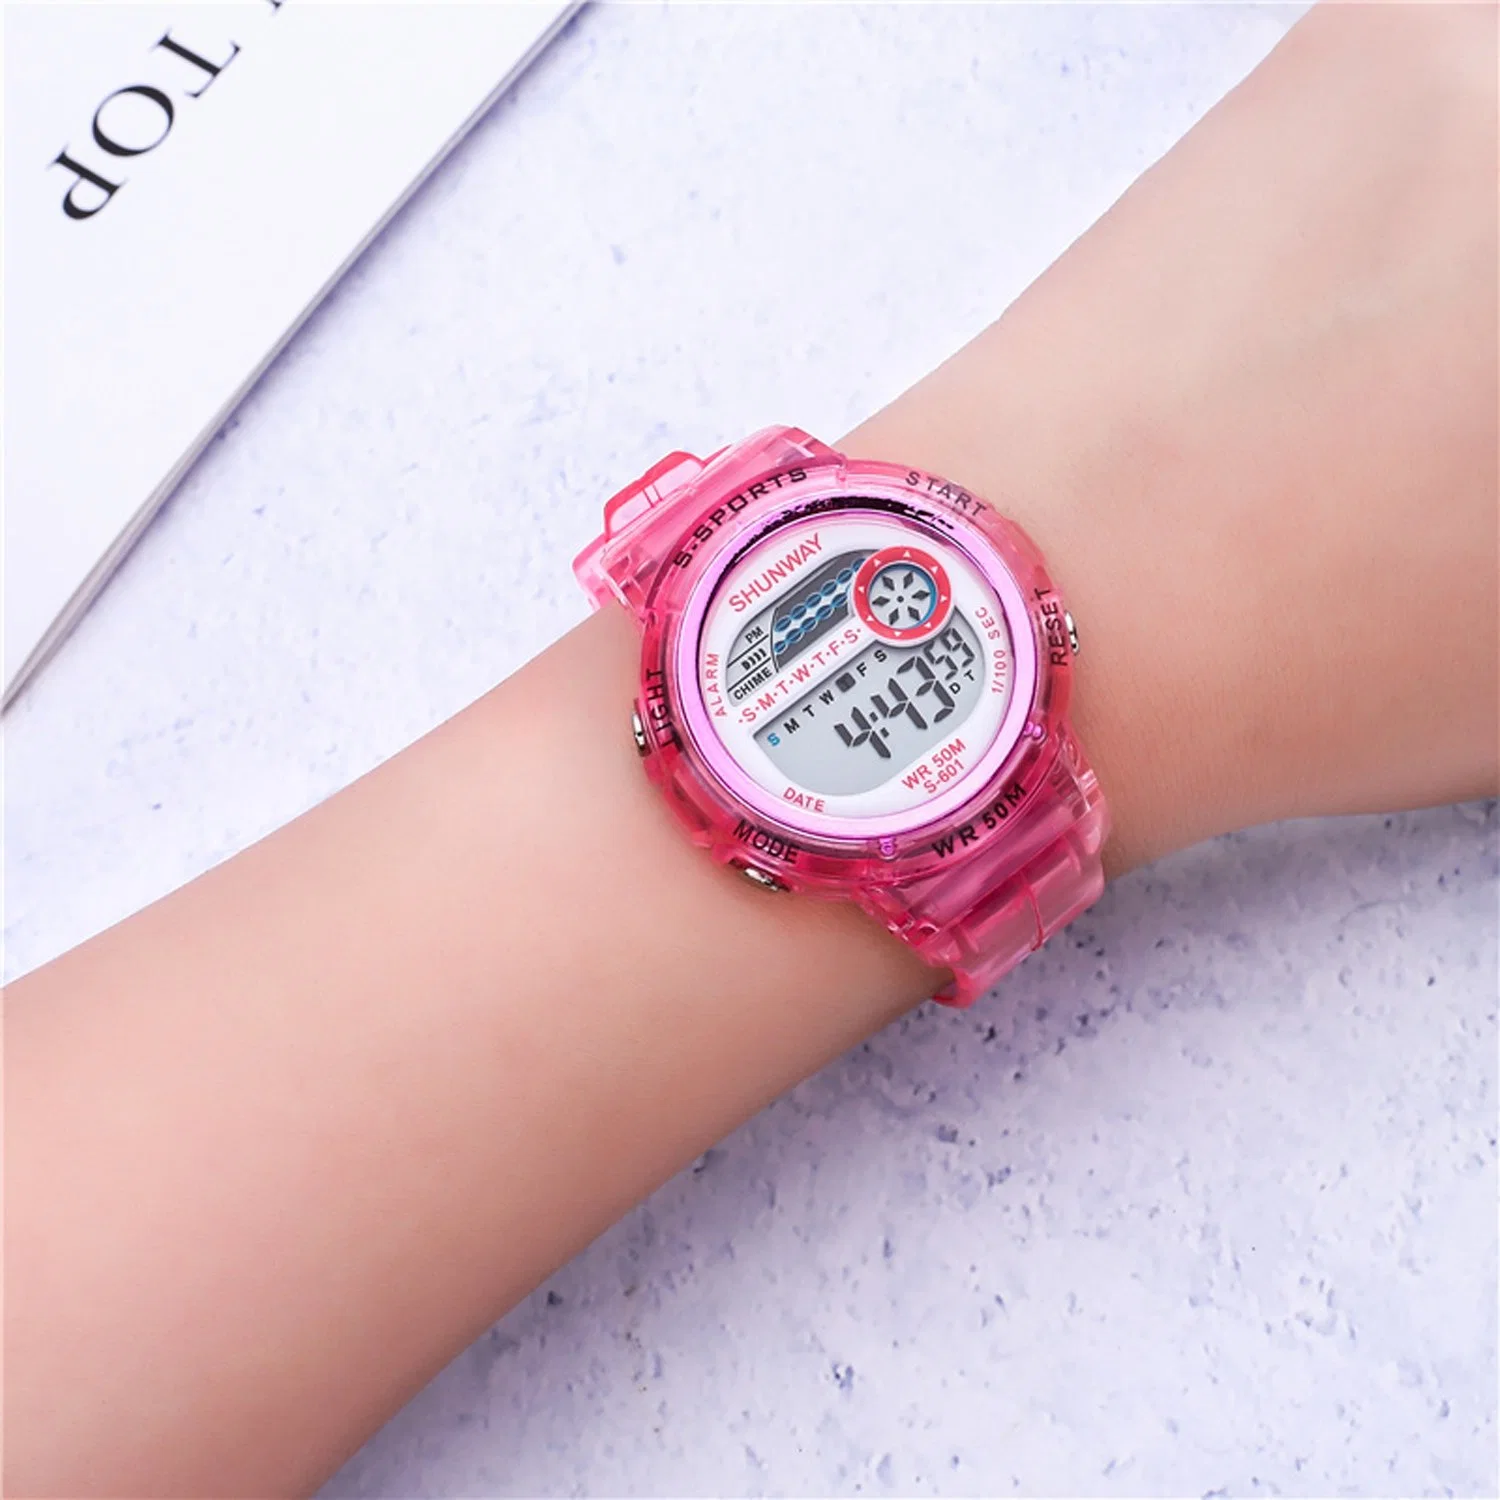 Digital Watch Woman Watch Lady Watch Kids Watch LED Light Watch 5 ATM Waterproof Watch Sport Watch Wrist Watch Analog Digital Watch